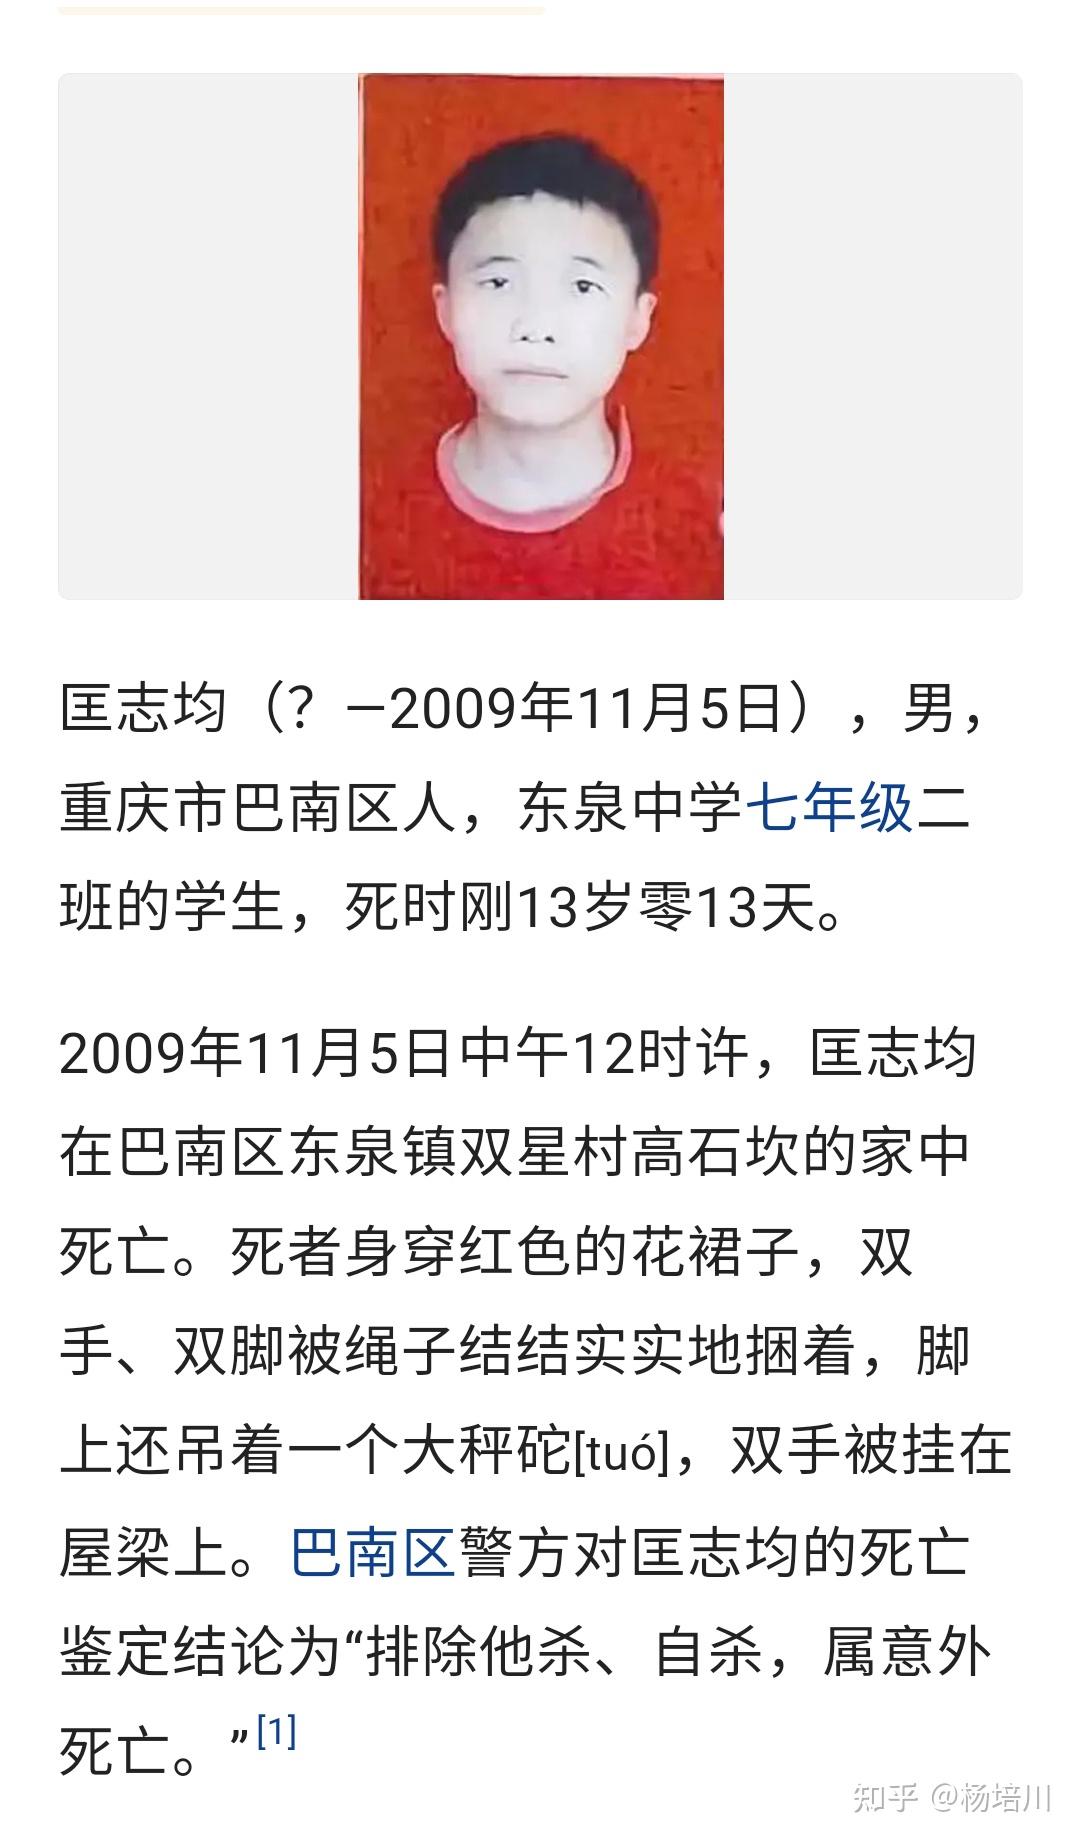 为您揭秘中国十大灵异事件榜首的2009年重庆红衣男孩灵异事件！_哔哩哔哩 (゜-゜)つロ 干杯~-bilibili